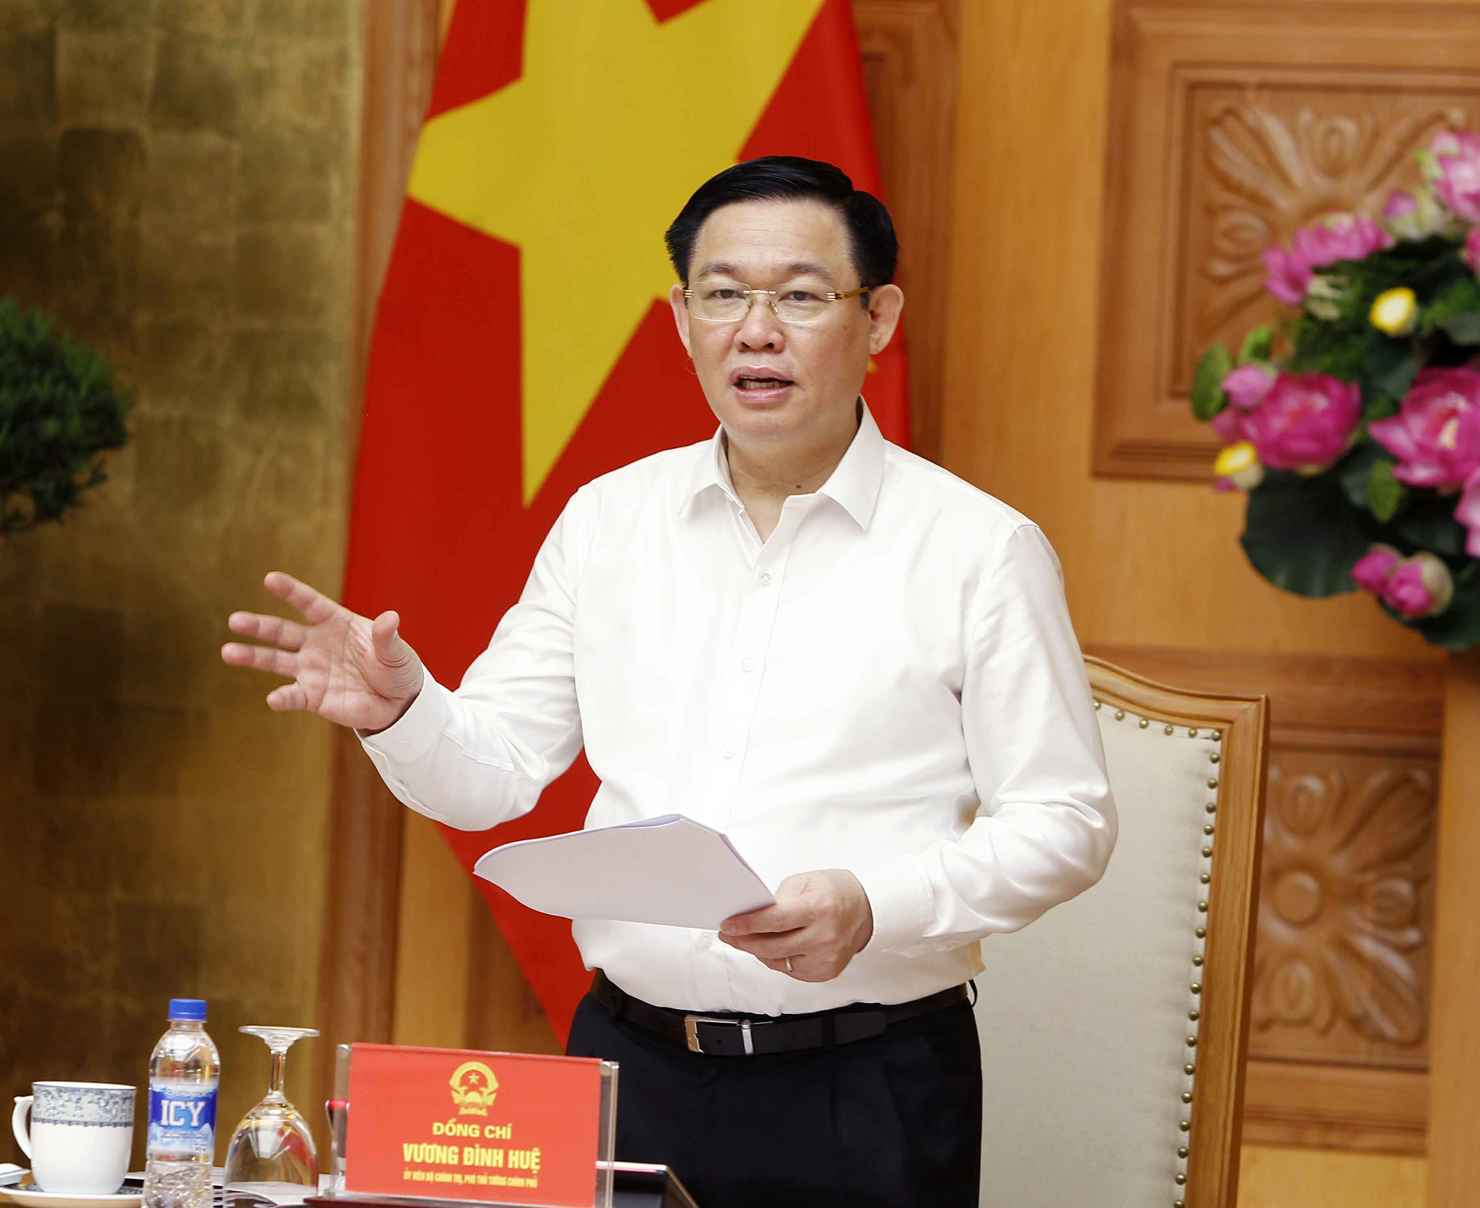  Phó Thủ tướng Vương Đình Huệ đánh giá kết quả cổ phần hóa trong 6 tháng đầu năm có chuyển biến tích cực, đi vào chiều sâu.